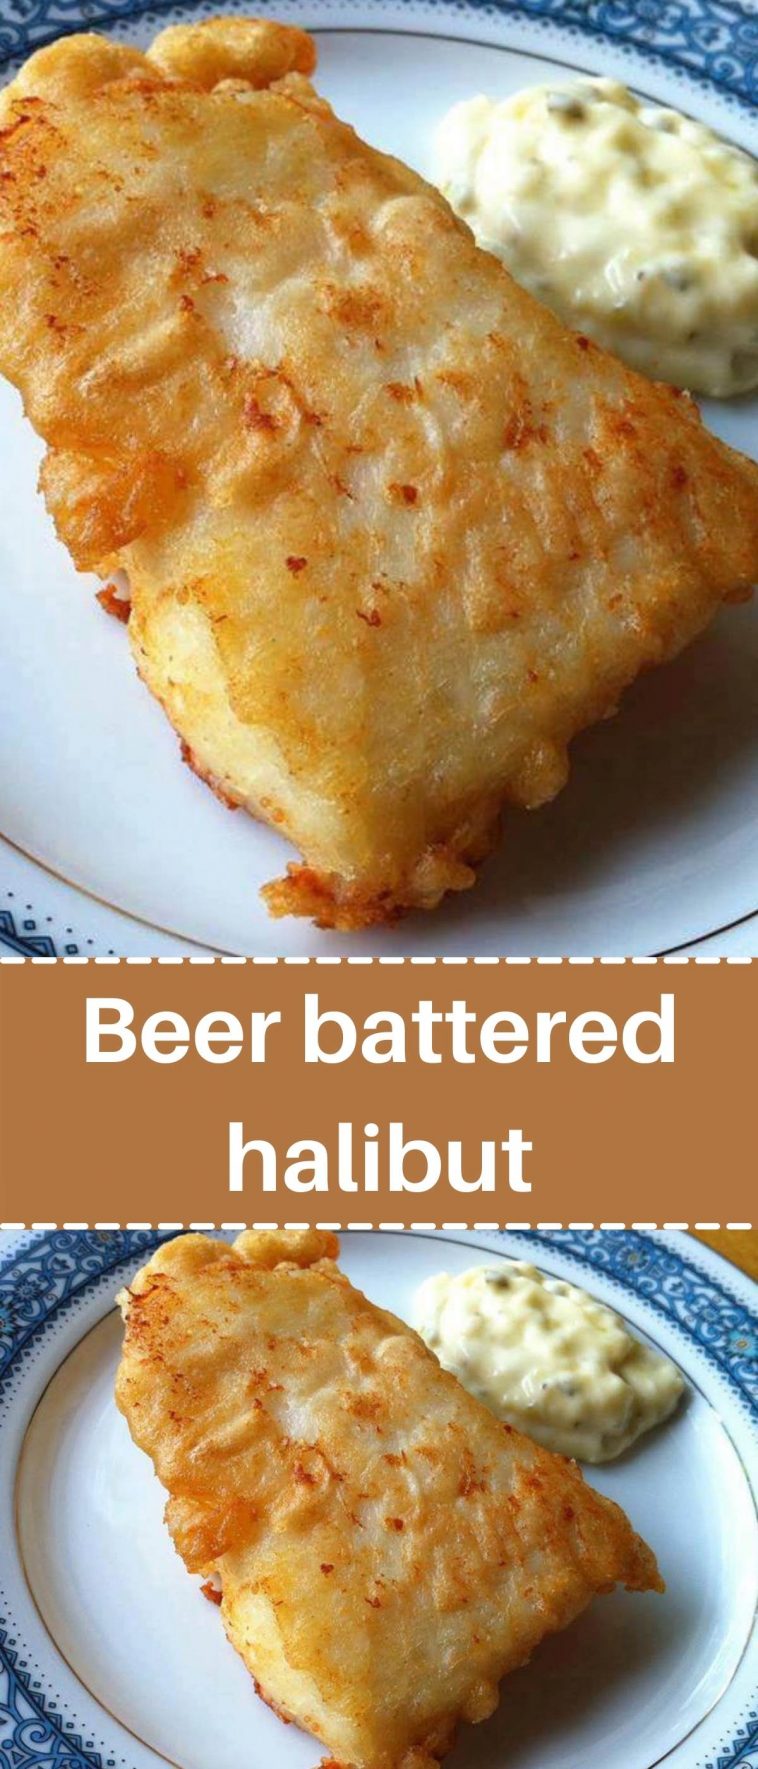 Beer battered halibut